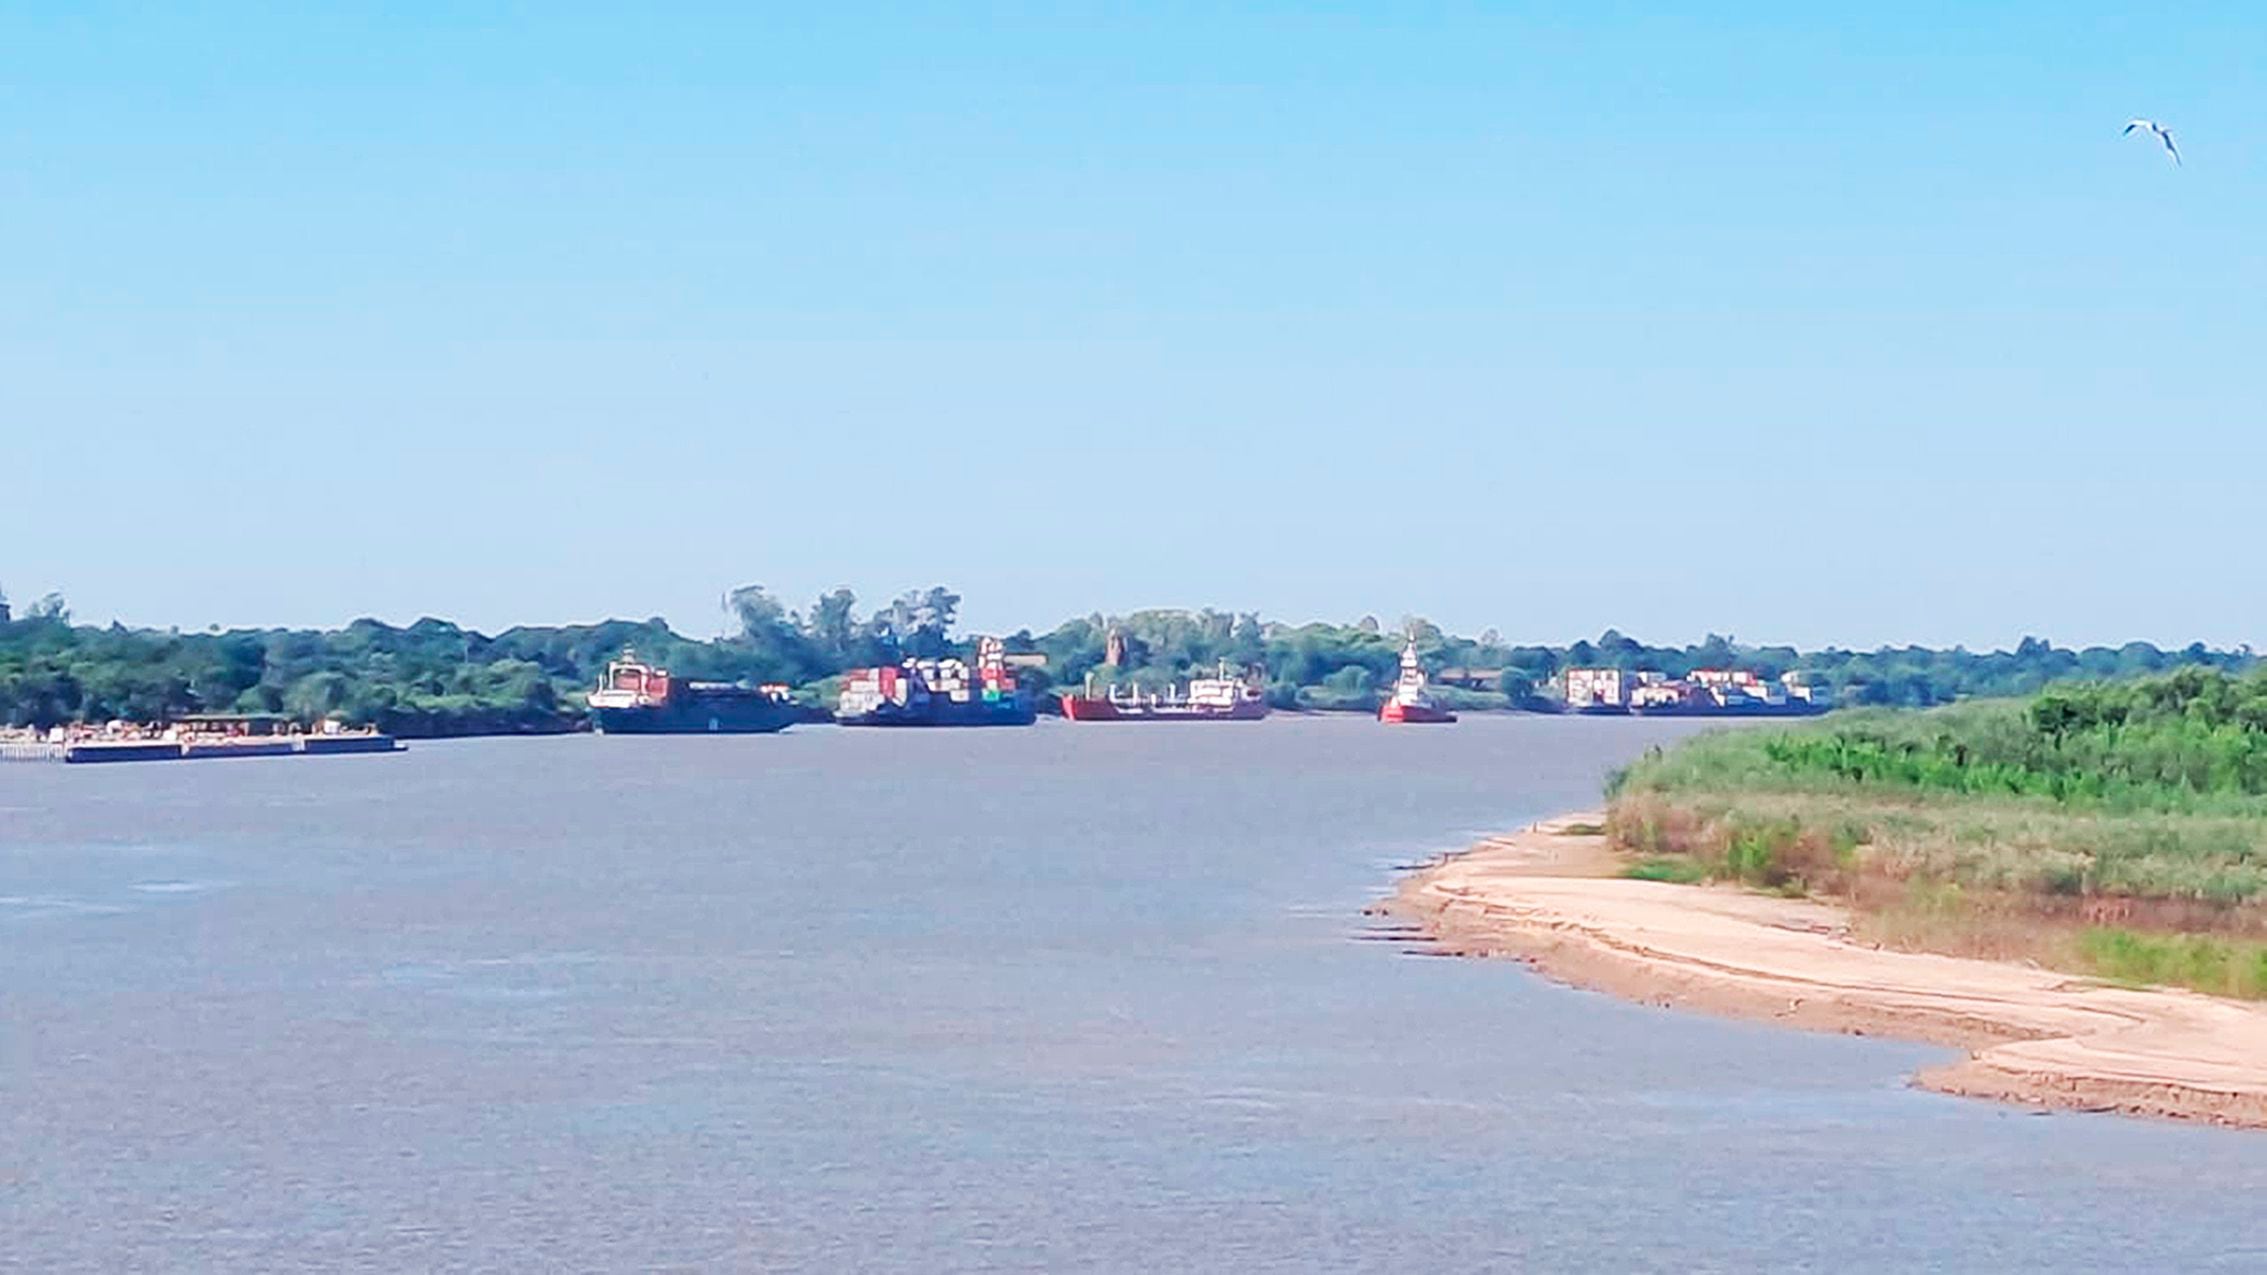 Vuelta Queso, Km 61 del río Paraguay. Km 1301 de la Hidrovía. Aguas abajo del Puerto De Pilar, donde un grupo de embarcaciones aguardan mejora del paso crítico para seguir curso, desde antes de Fin de Año.